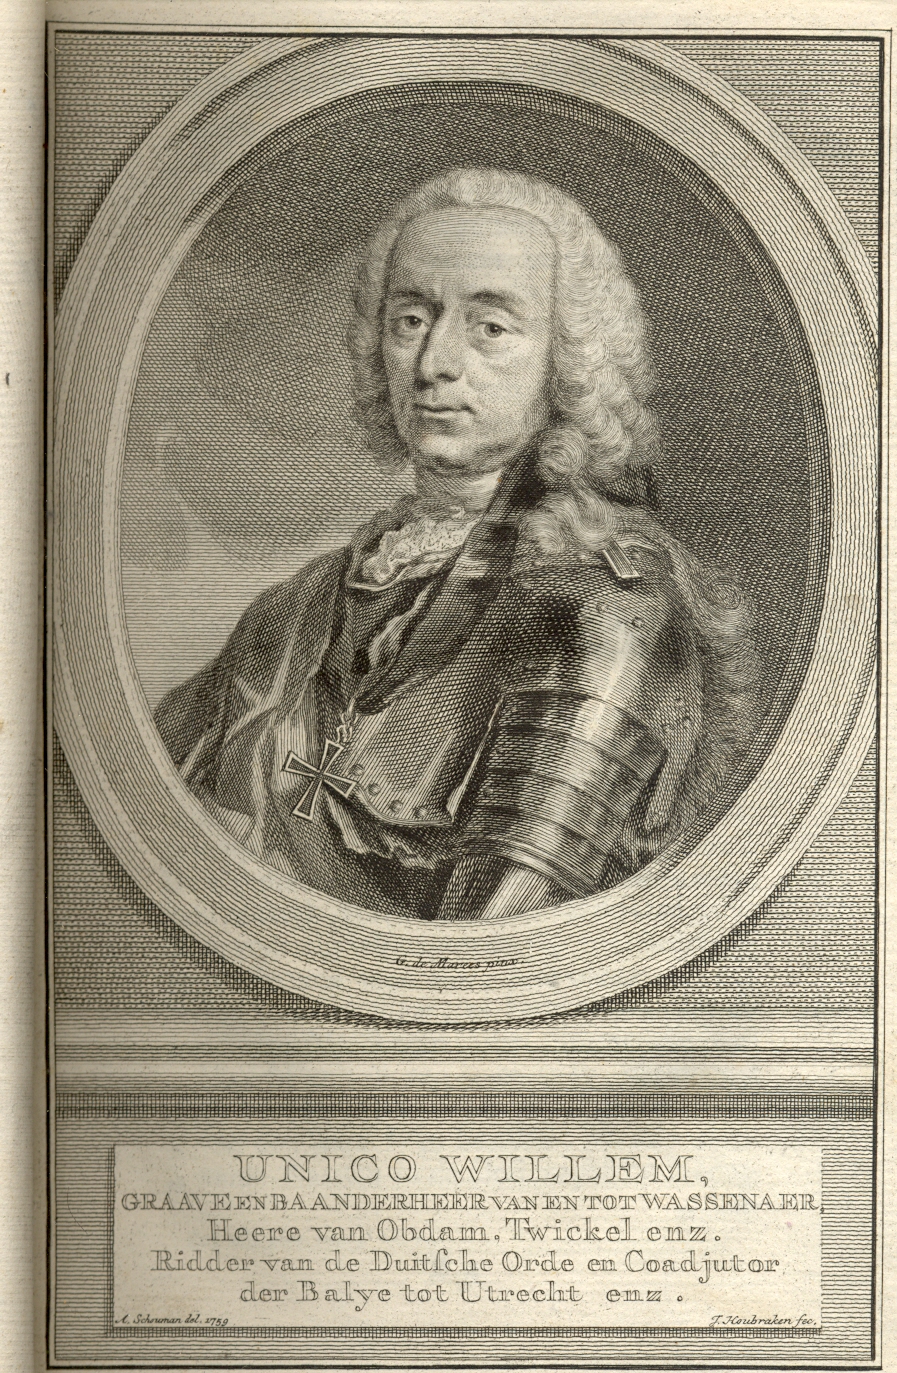 Unico Willem, graaf van Wassenaar, etc., 1746.